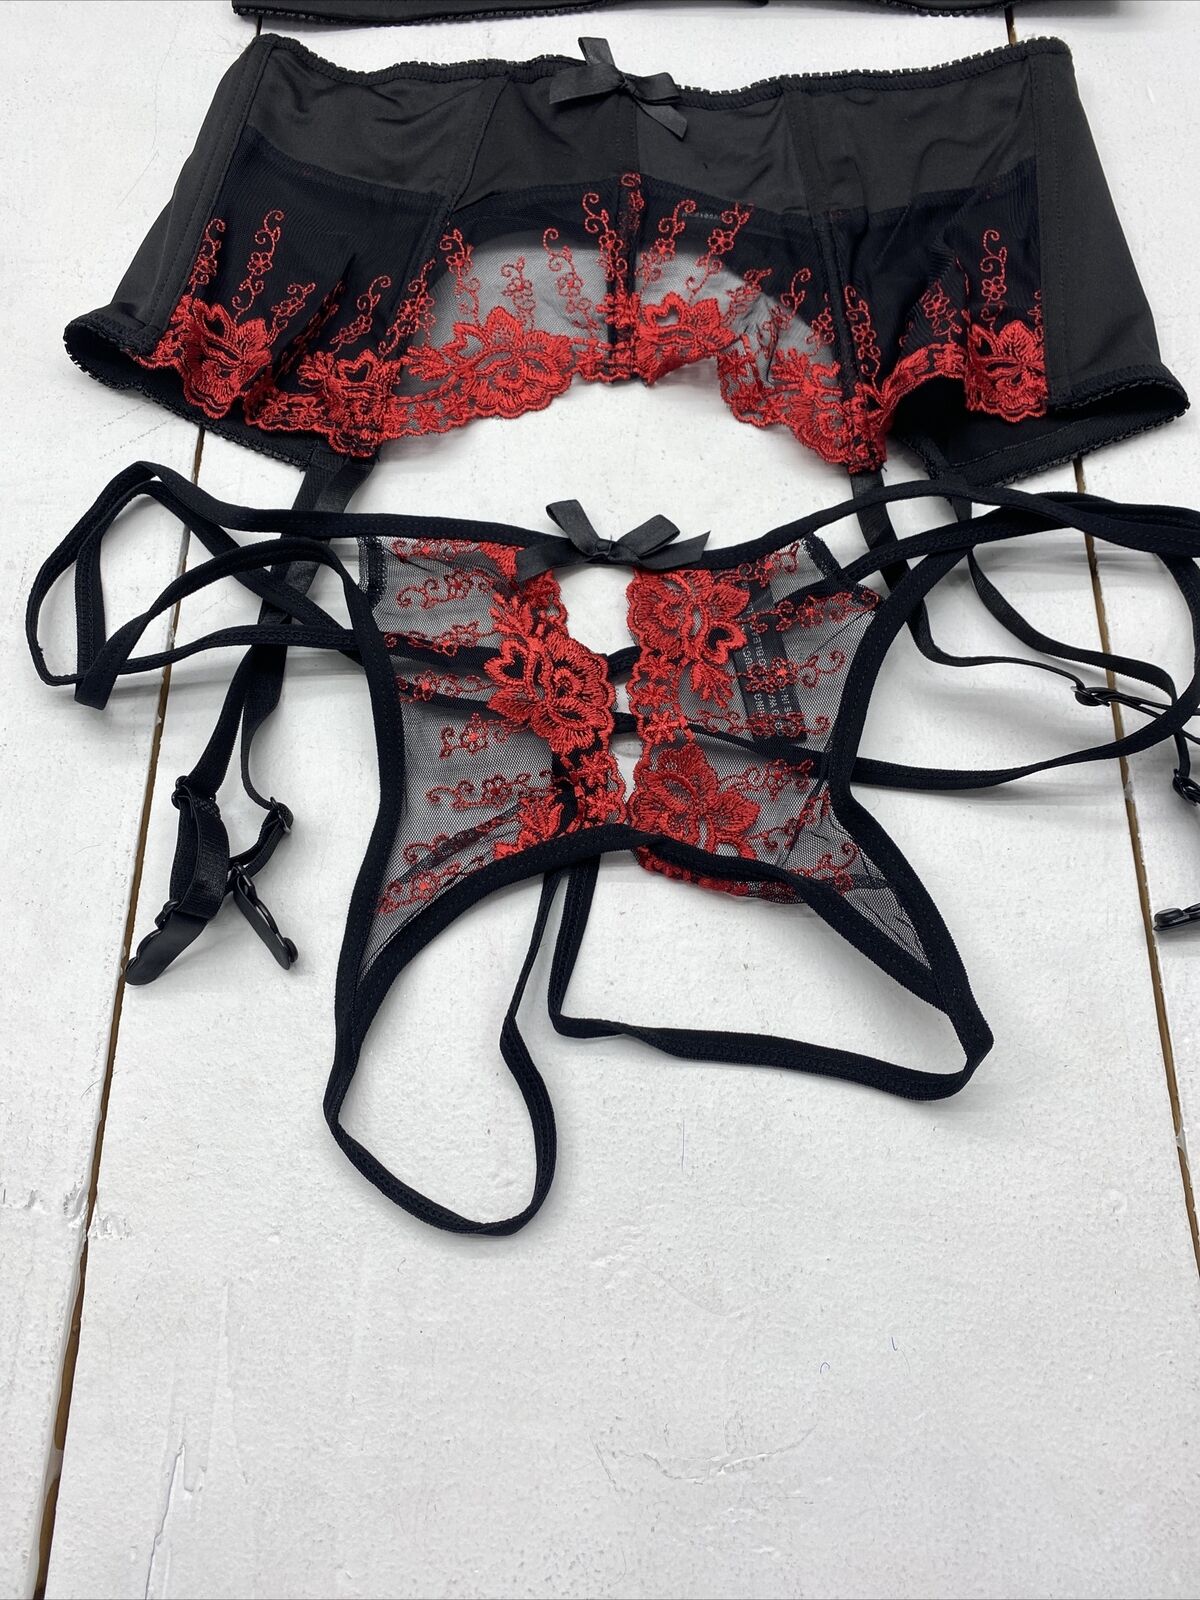 Popsi Lingerie Black/Red Bra Garter Belt Panty 3pc Set Size Large New -  beyond exchange